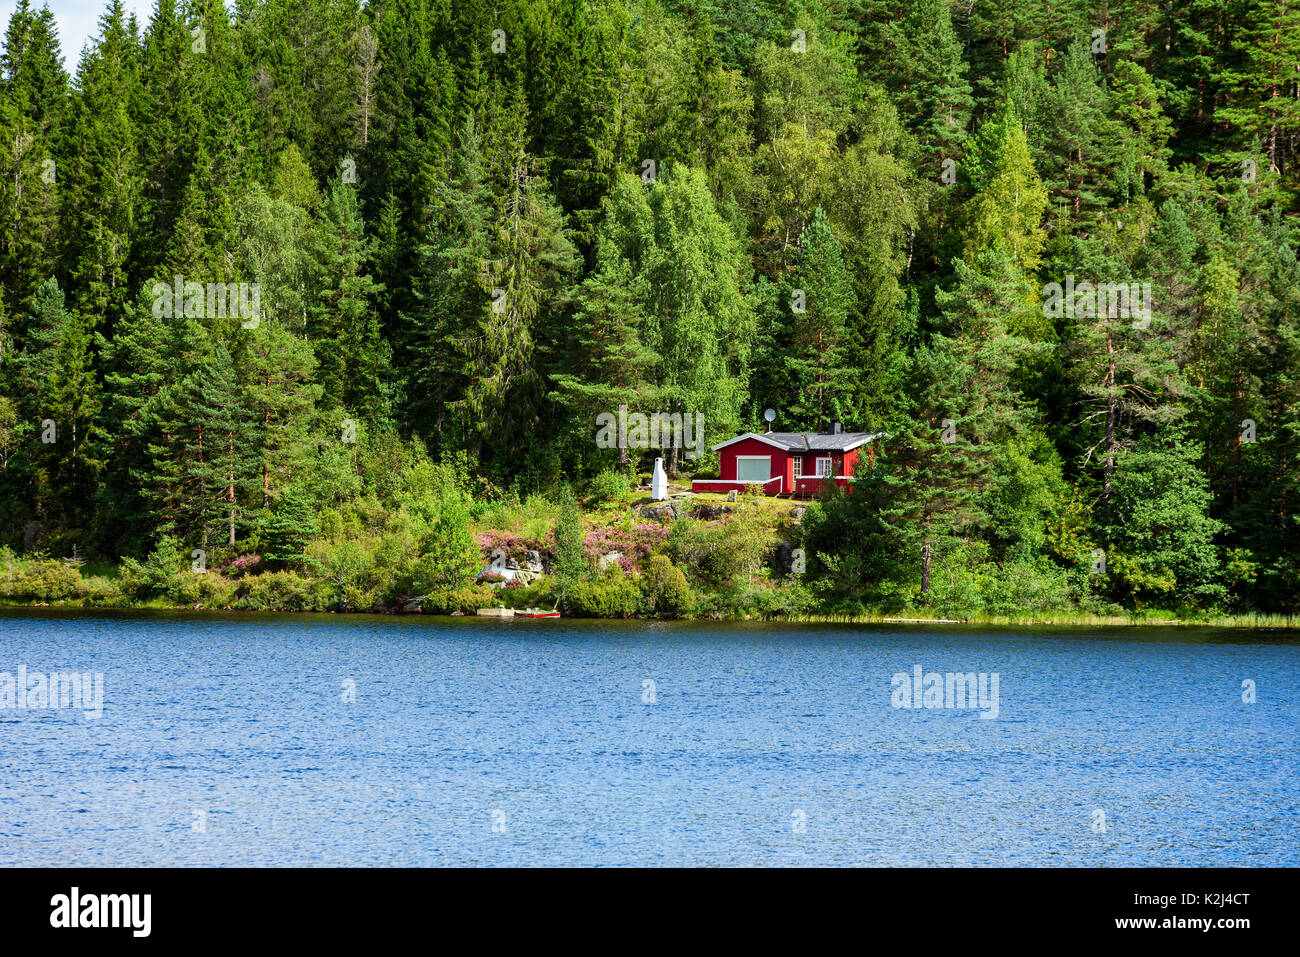 Rossa piccola cabina in legno tra gli alberi della foresta. Foresta calmo lago o fiume in primo piano. Foto Stock